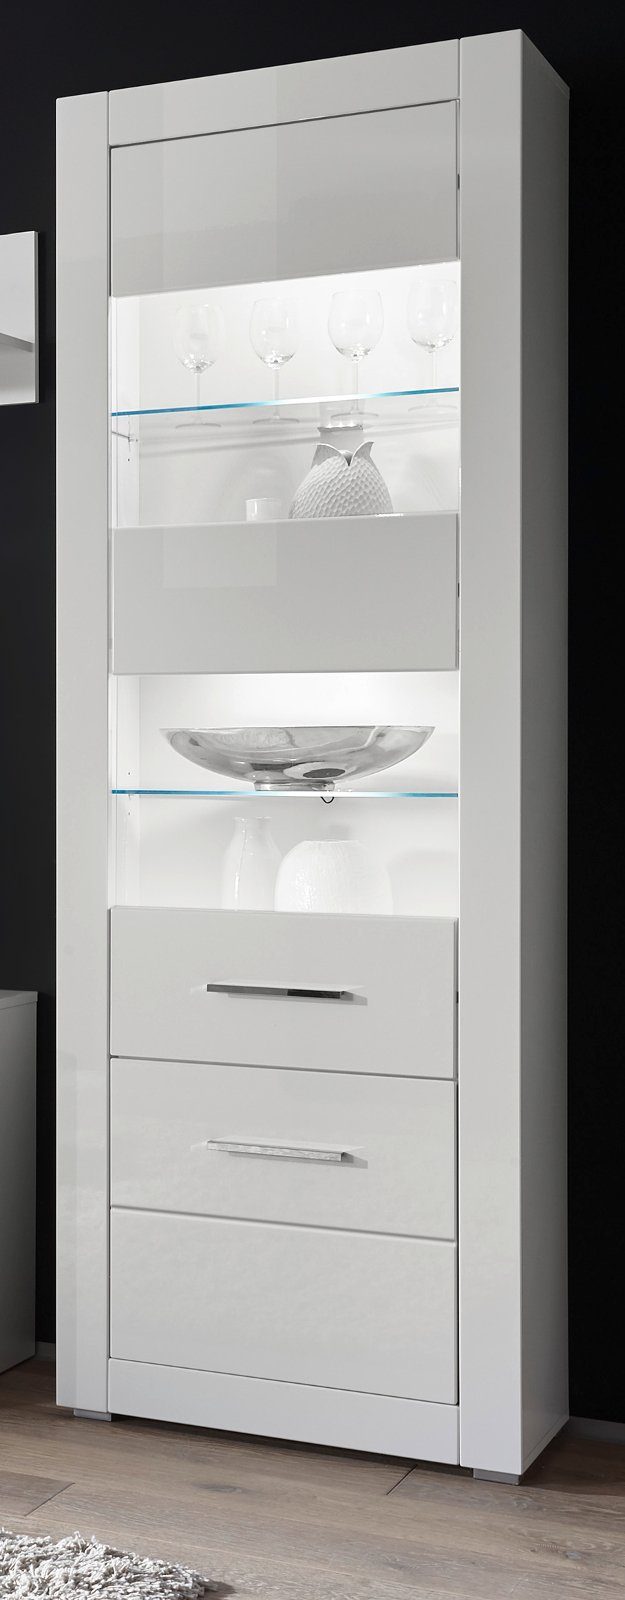 Furn.Design Stauraumvitrine Carrara (Standvitrine in weiß, 2-türig, 65 x  198 cm) Hochglanz | Standvitrinen